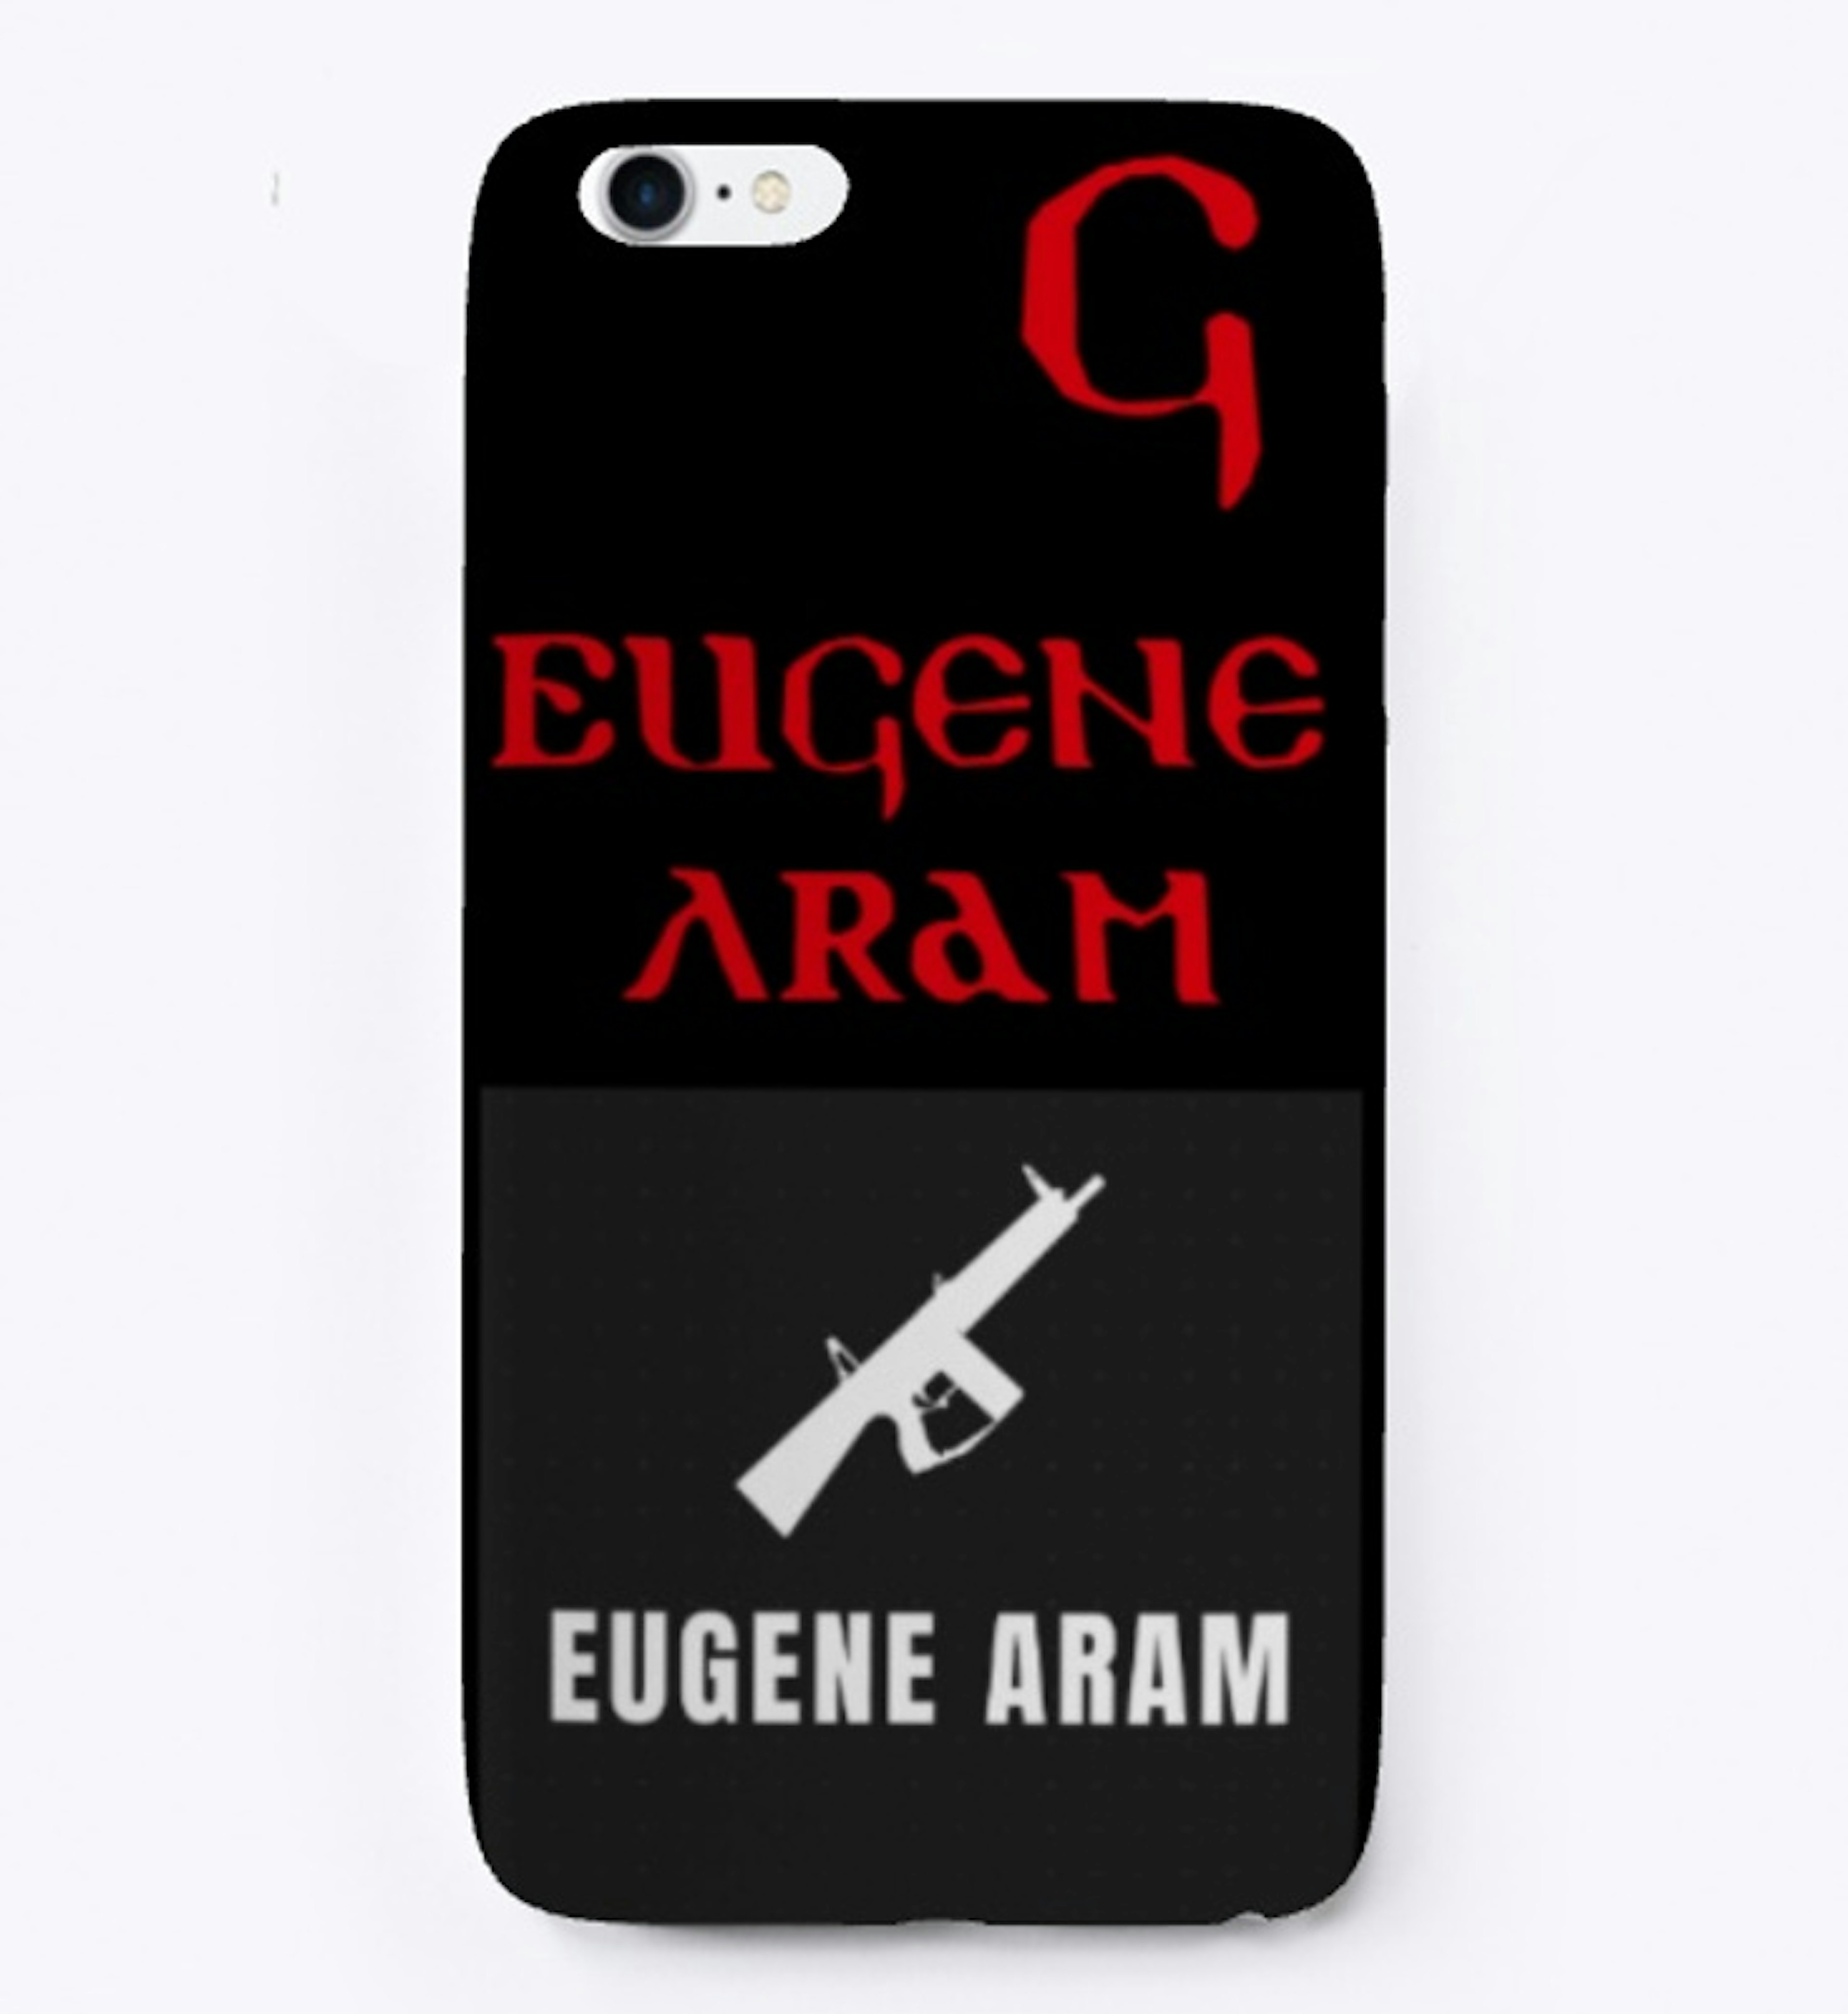 Eugene Aram